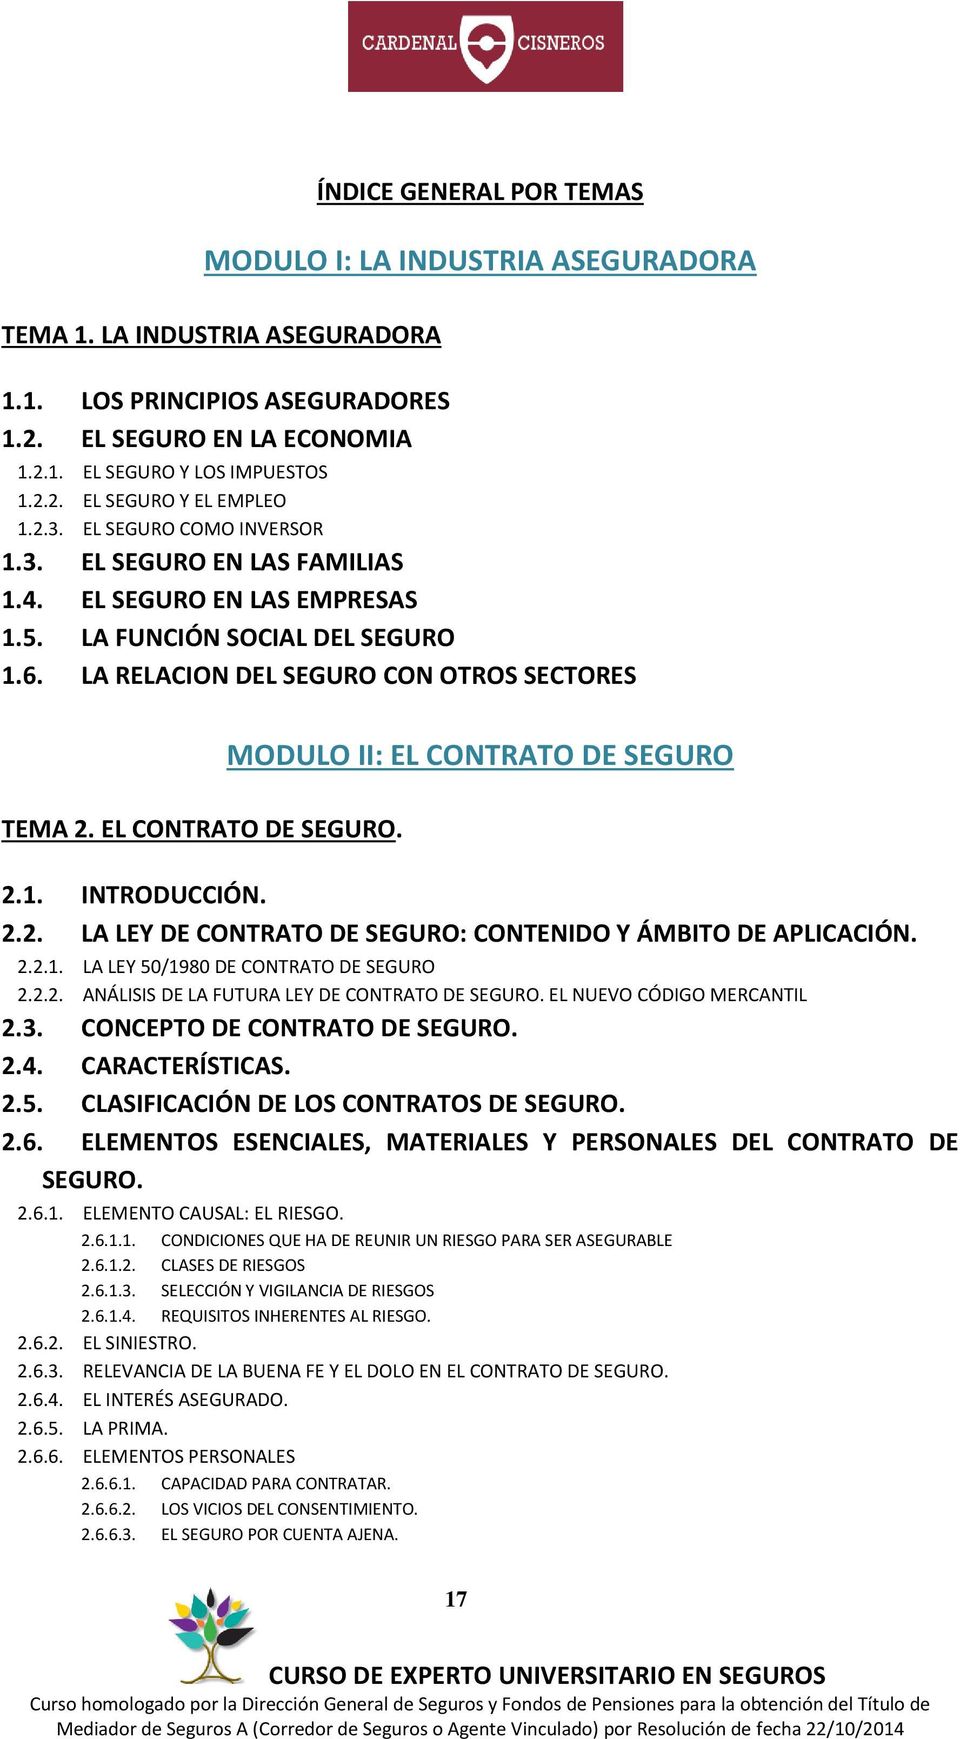 LA RELACION DEL SEGURO CON OTROS SECTORES MODULO II: EL CONTRATO DE SEGURO TEMA 2. EL CONTRATO DE SEGURO. 2.1. INTRODUCCIÓN. 2.2. LA LEY DE CONTRATO DE SEGURO: CONTENIDO Y ÁMBITO DE APLICACIÓN. 2.2.1. LA LEY 50/1980 DE CONTRATO DE SEGURO 2.